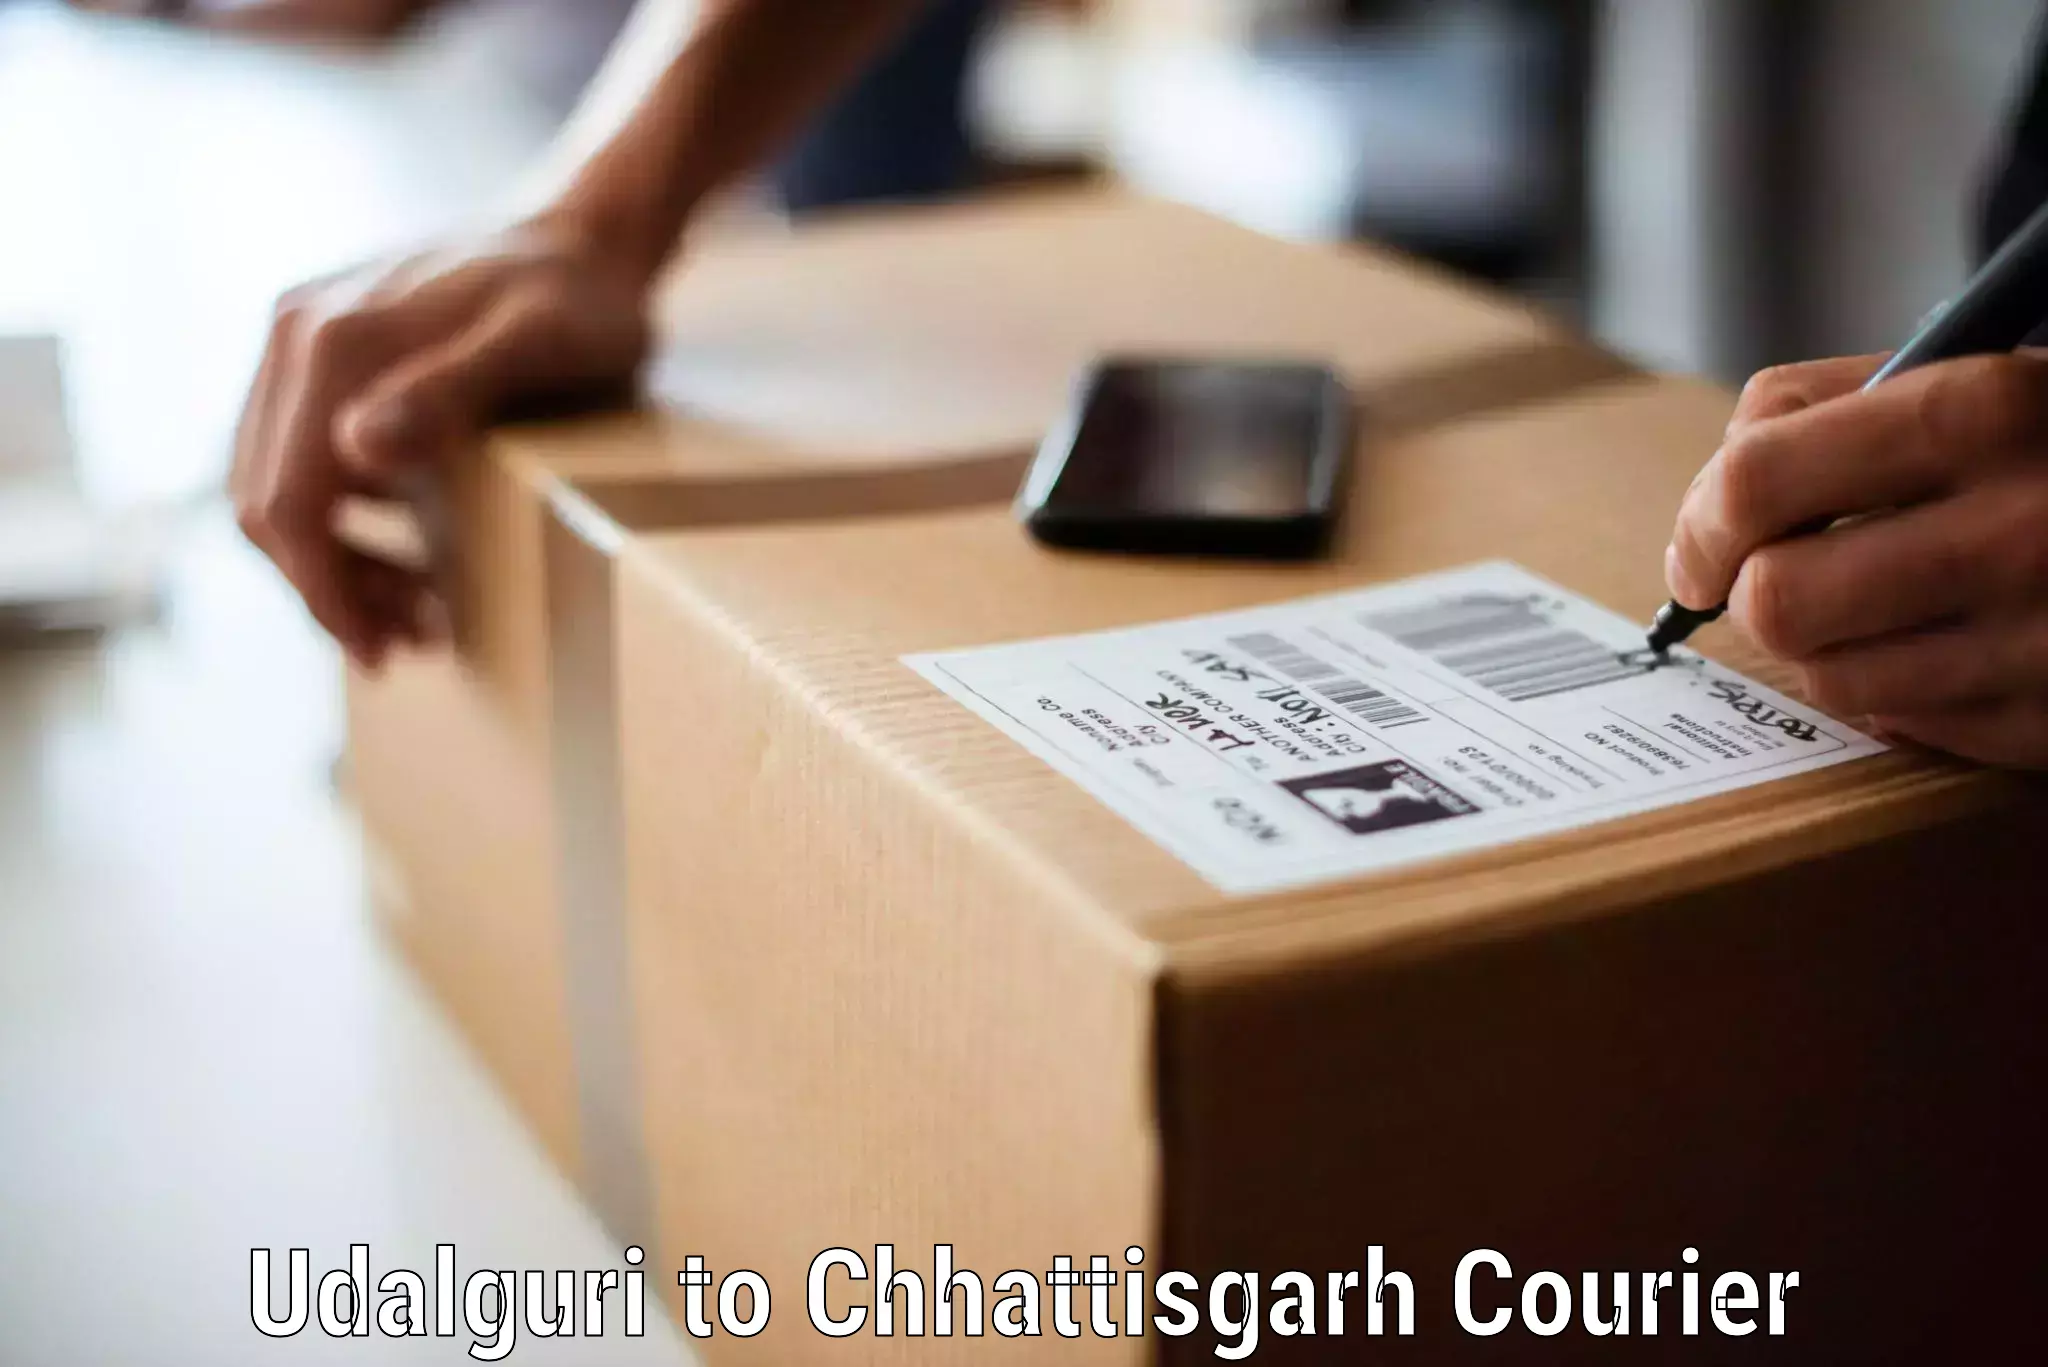 Furniture transport professionals Udalguri to Chhattisgarh